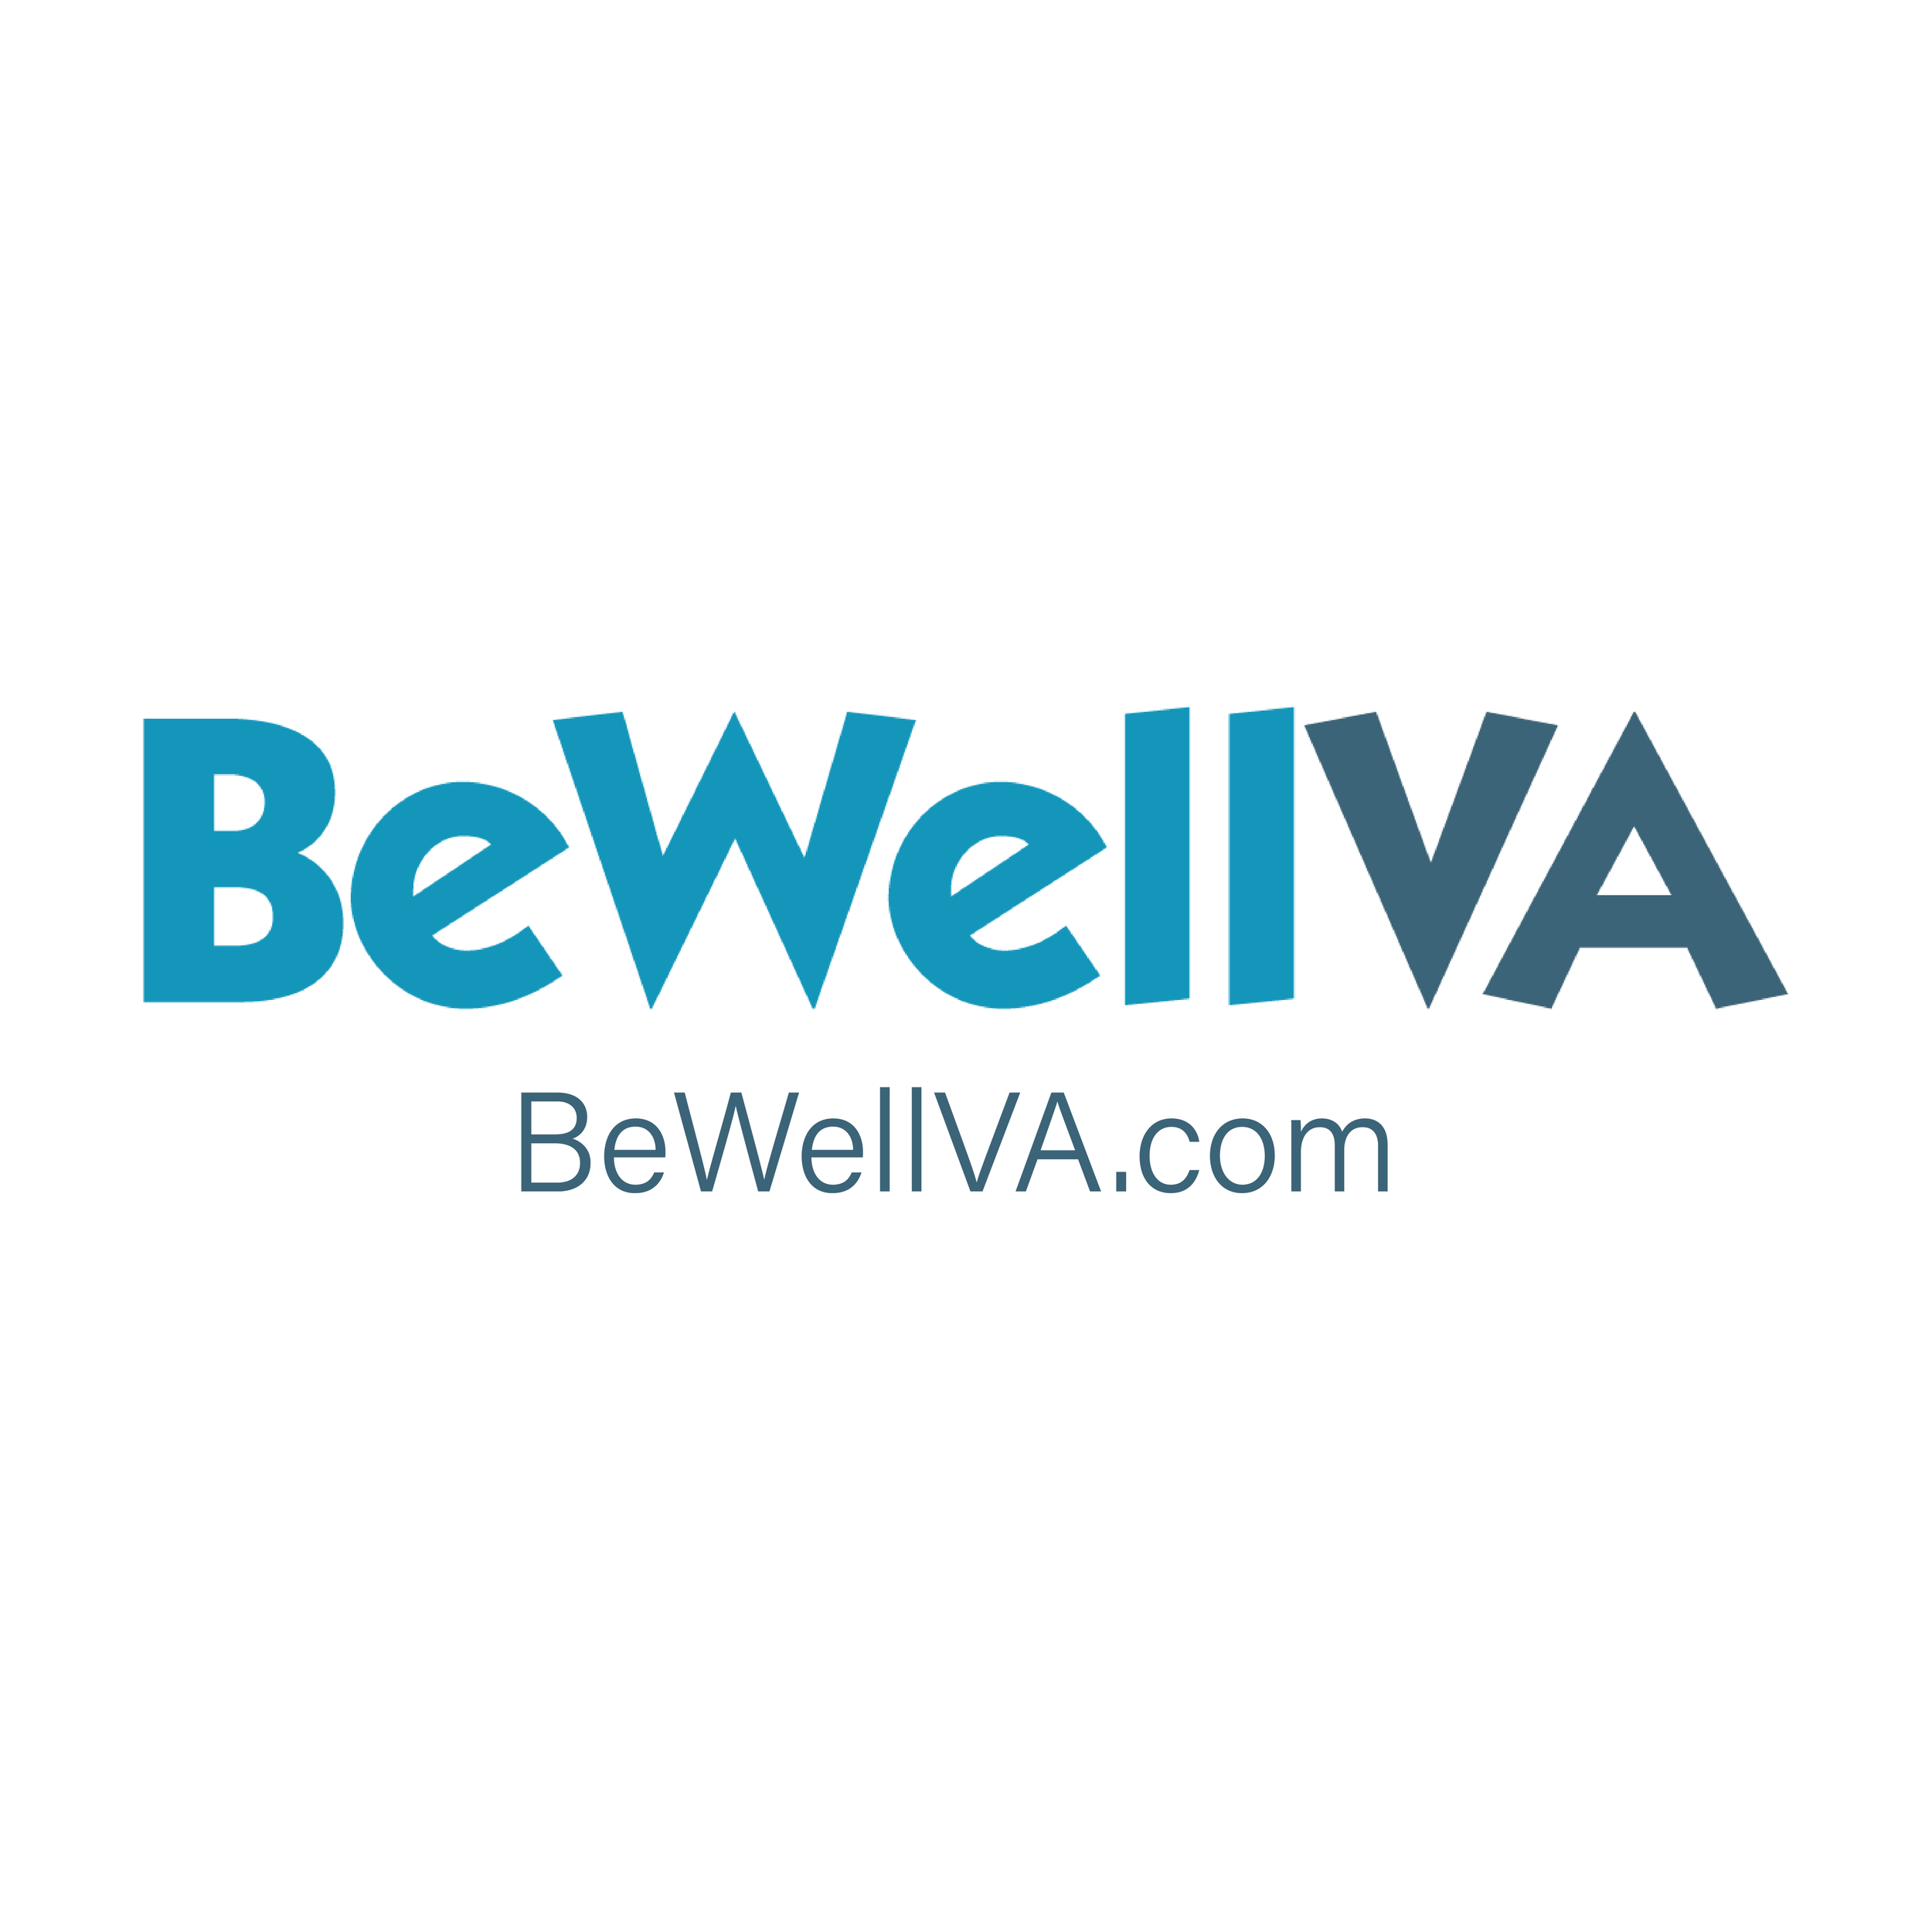 logo y sitio web de bewellva - bewellva.com